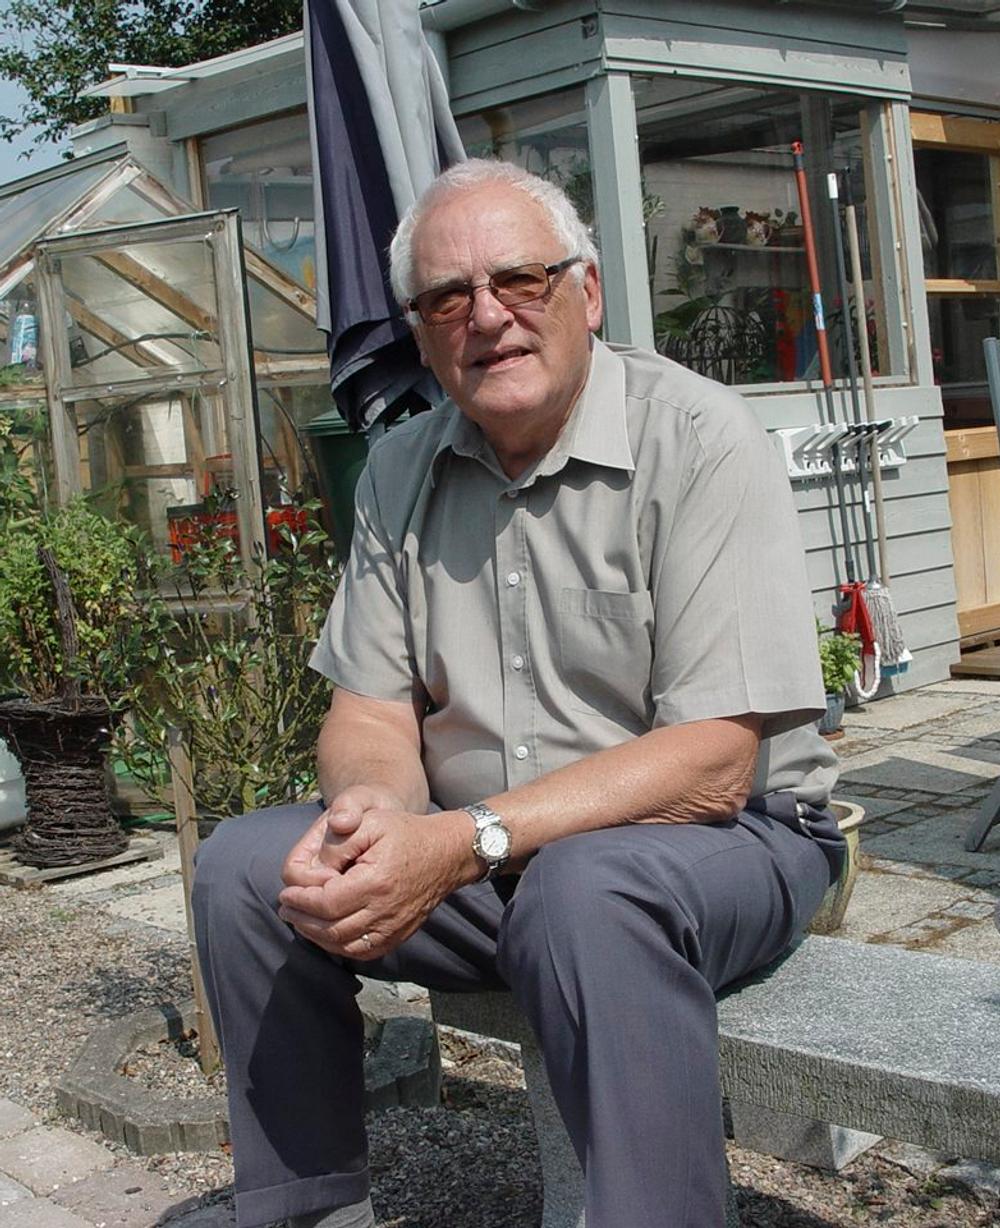 Preben Kjær boede i Store Heddinge på Stevns, hvor dette billde er taget i forbindelse med, at Preben Kjær gik på pension i 2010.